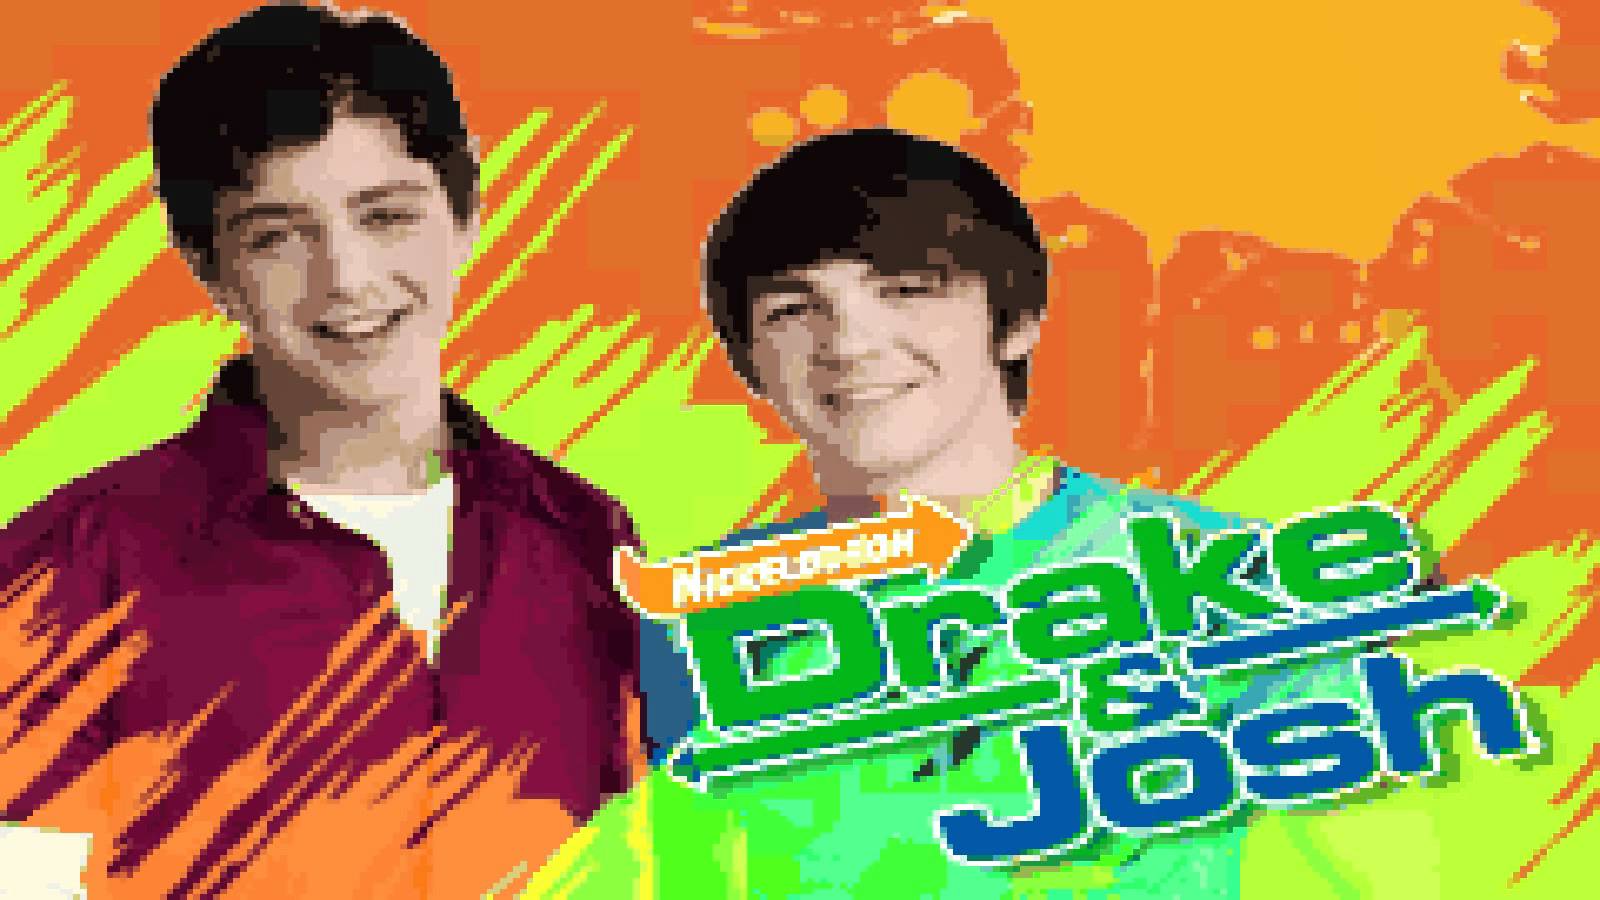 Drake and Josh Wallpaper. Drake 6 God